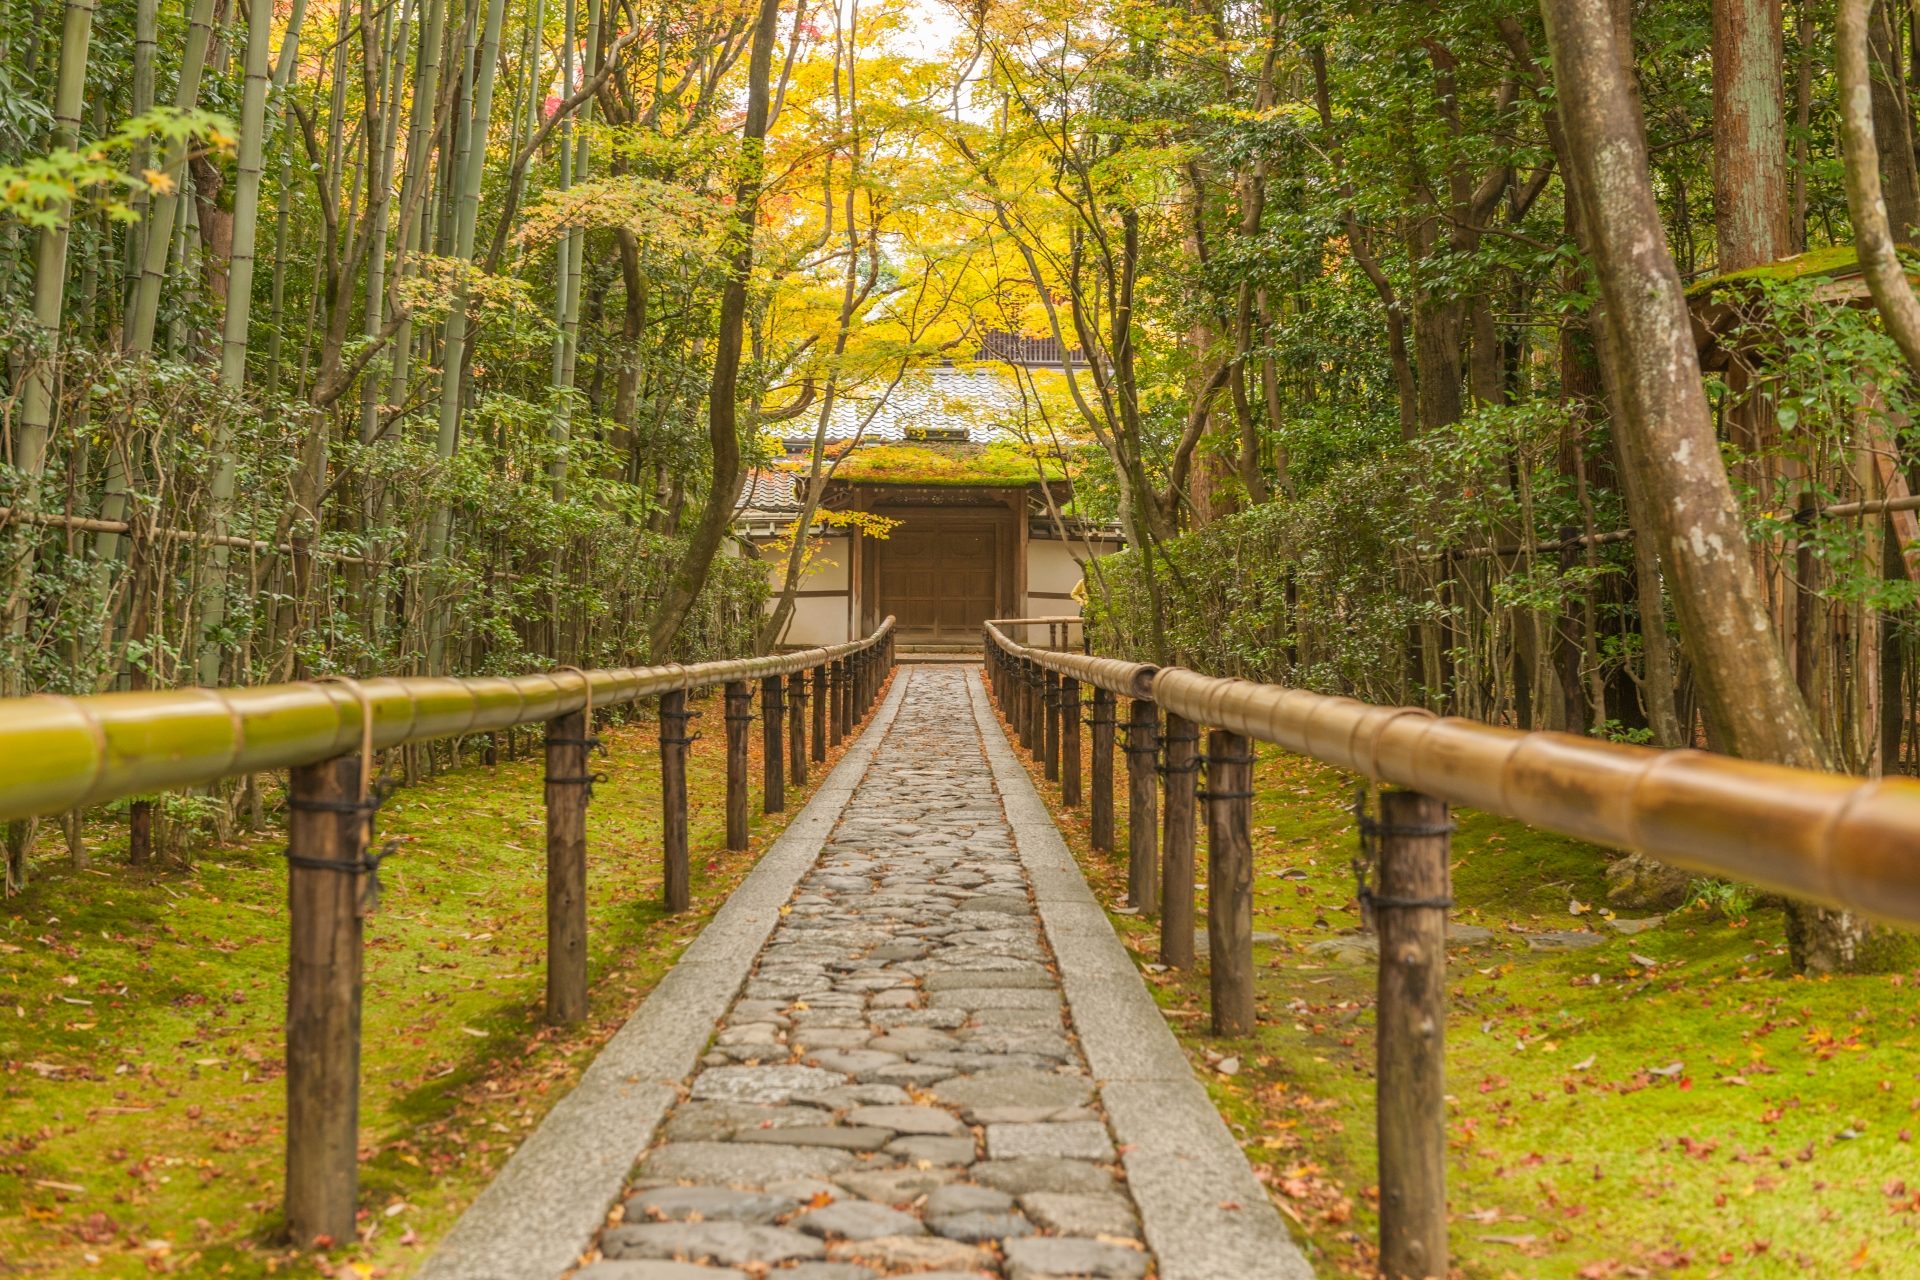 大德寺是日本的珍貴的寶庫